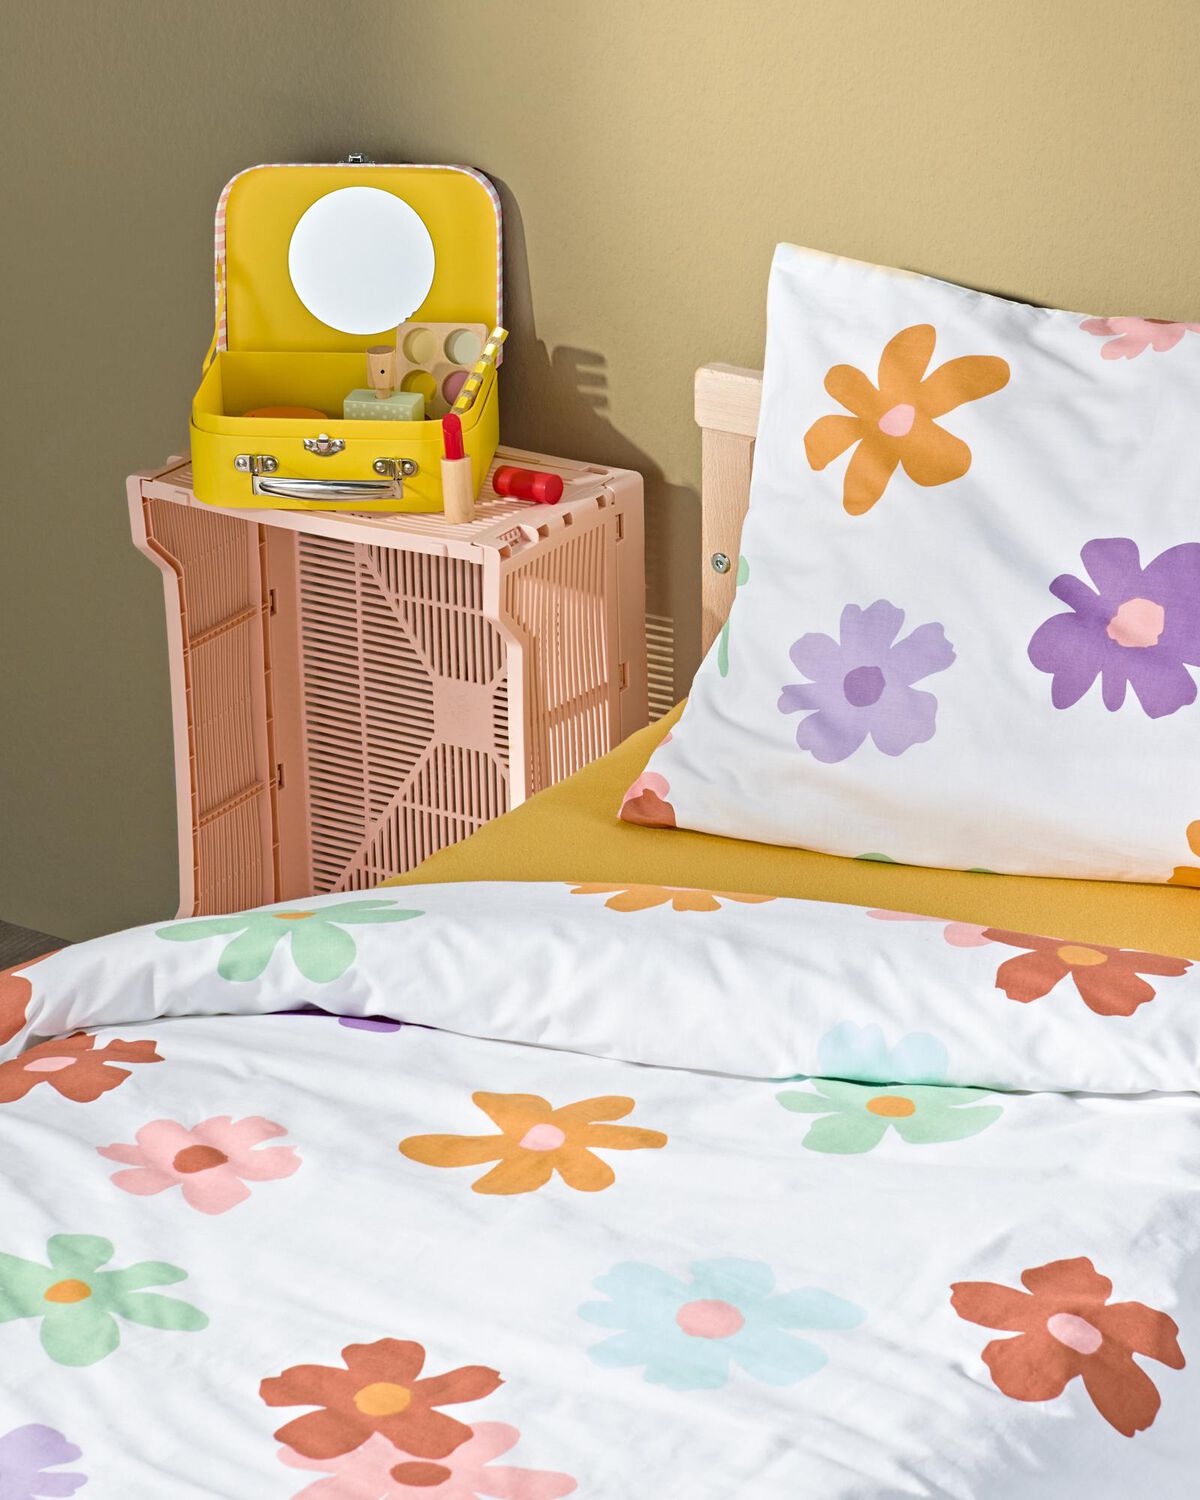 Kinder-Bettwäsche mit Blumen, rosafarbener Kiste und Spielkoffer - 200140 - HEMA